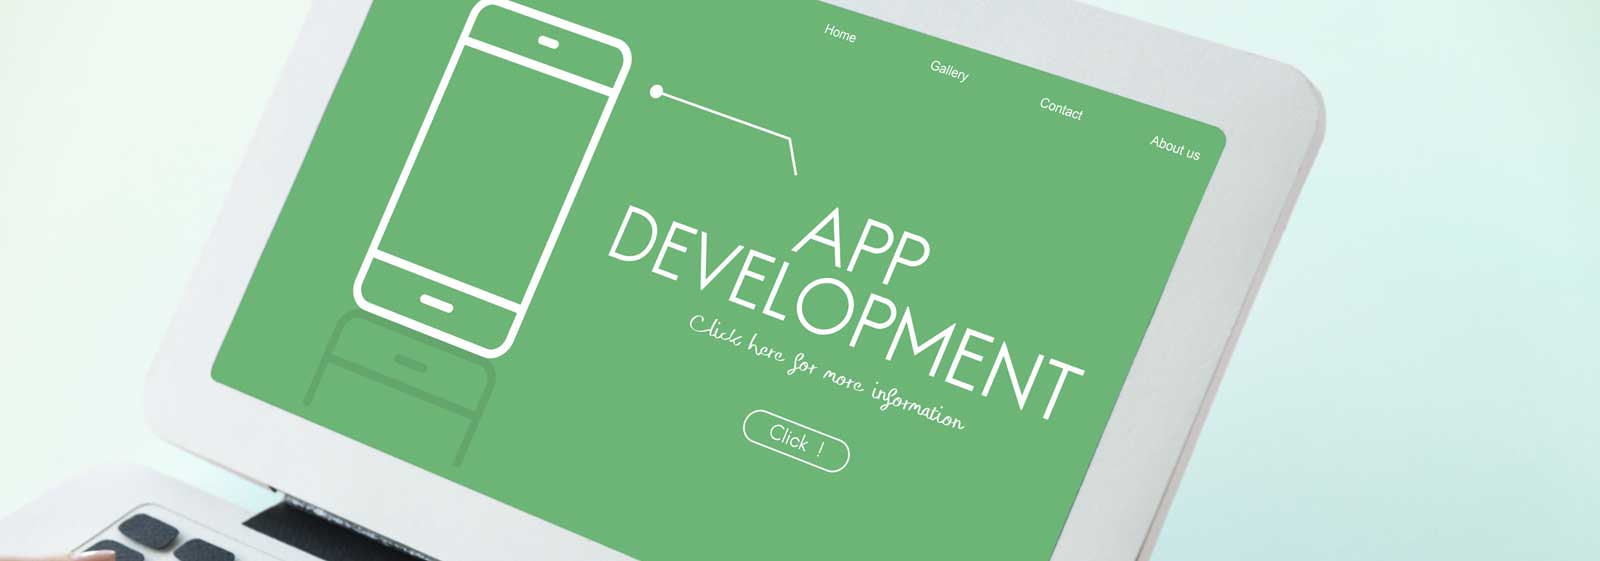 iOS App Development Company Mumbai